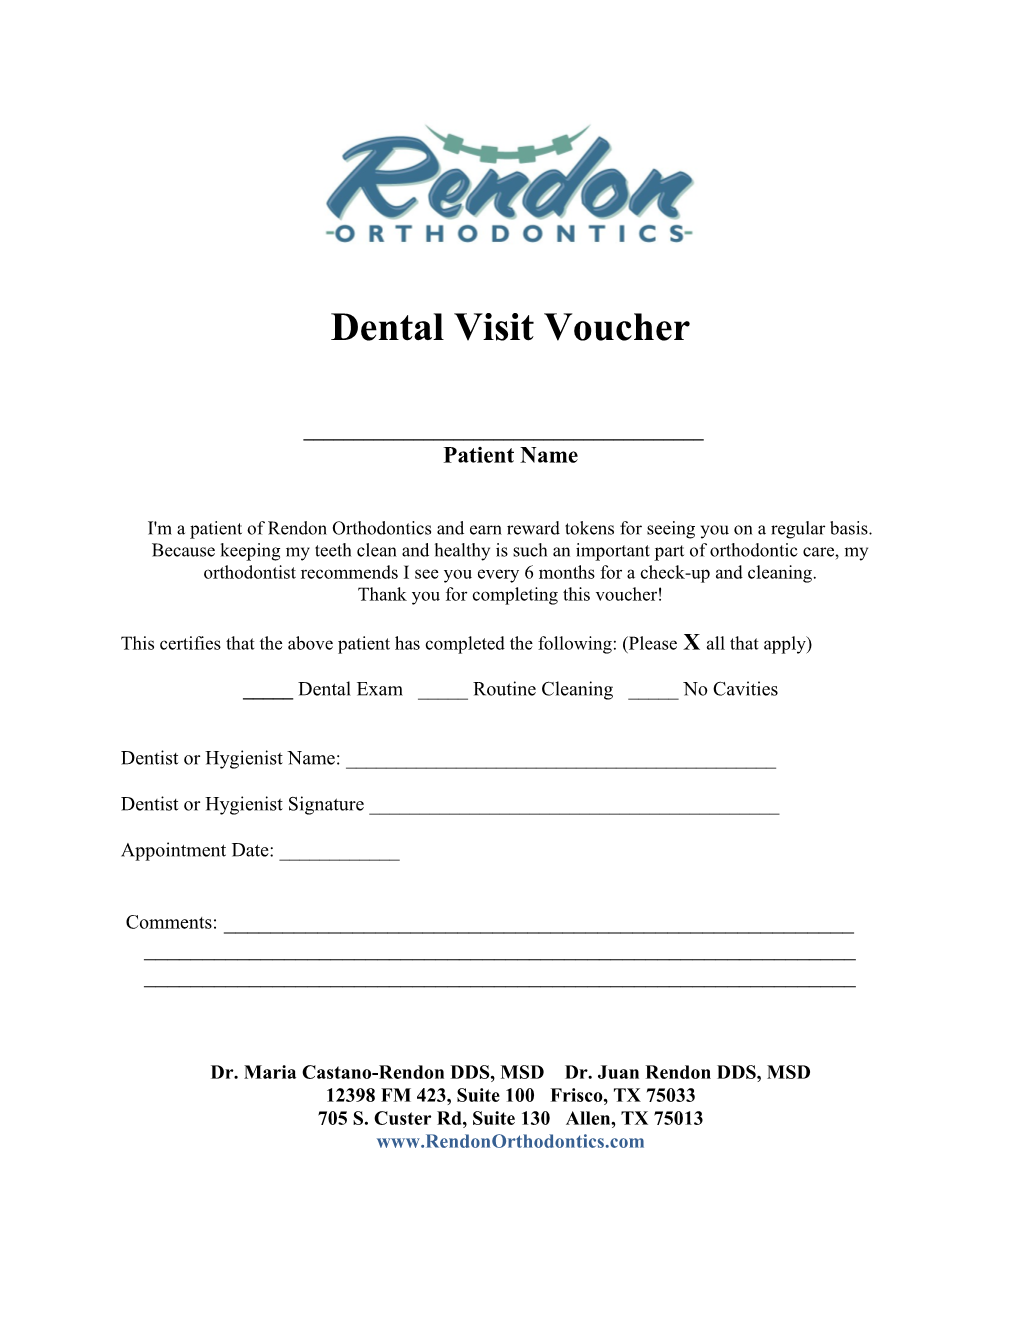 Dental Visit Voucher